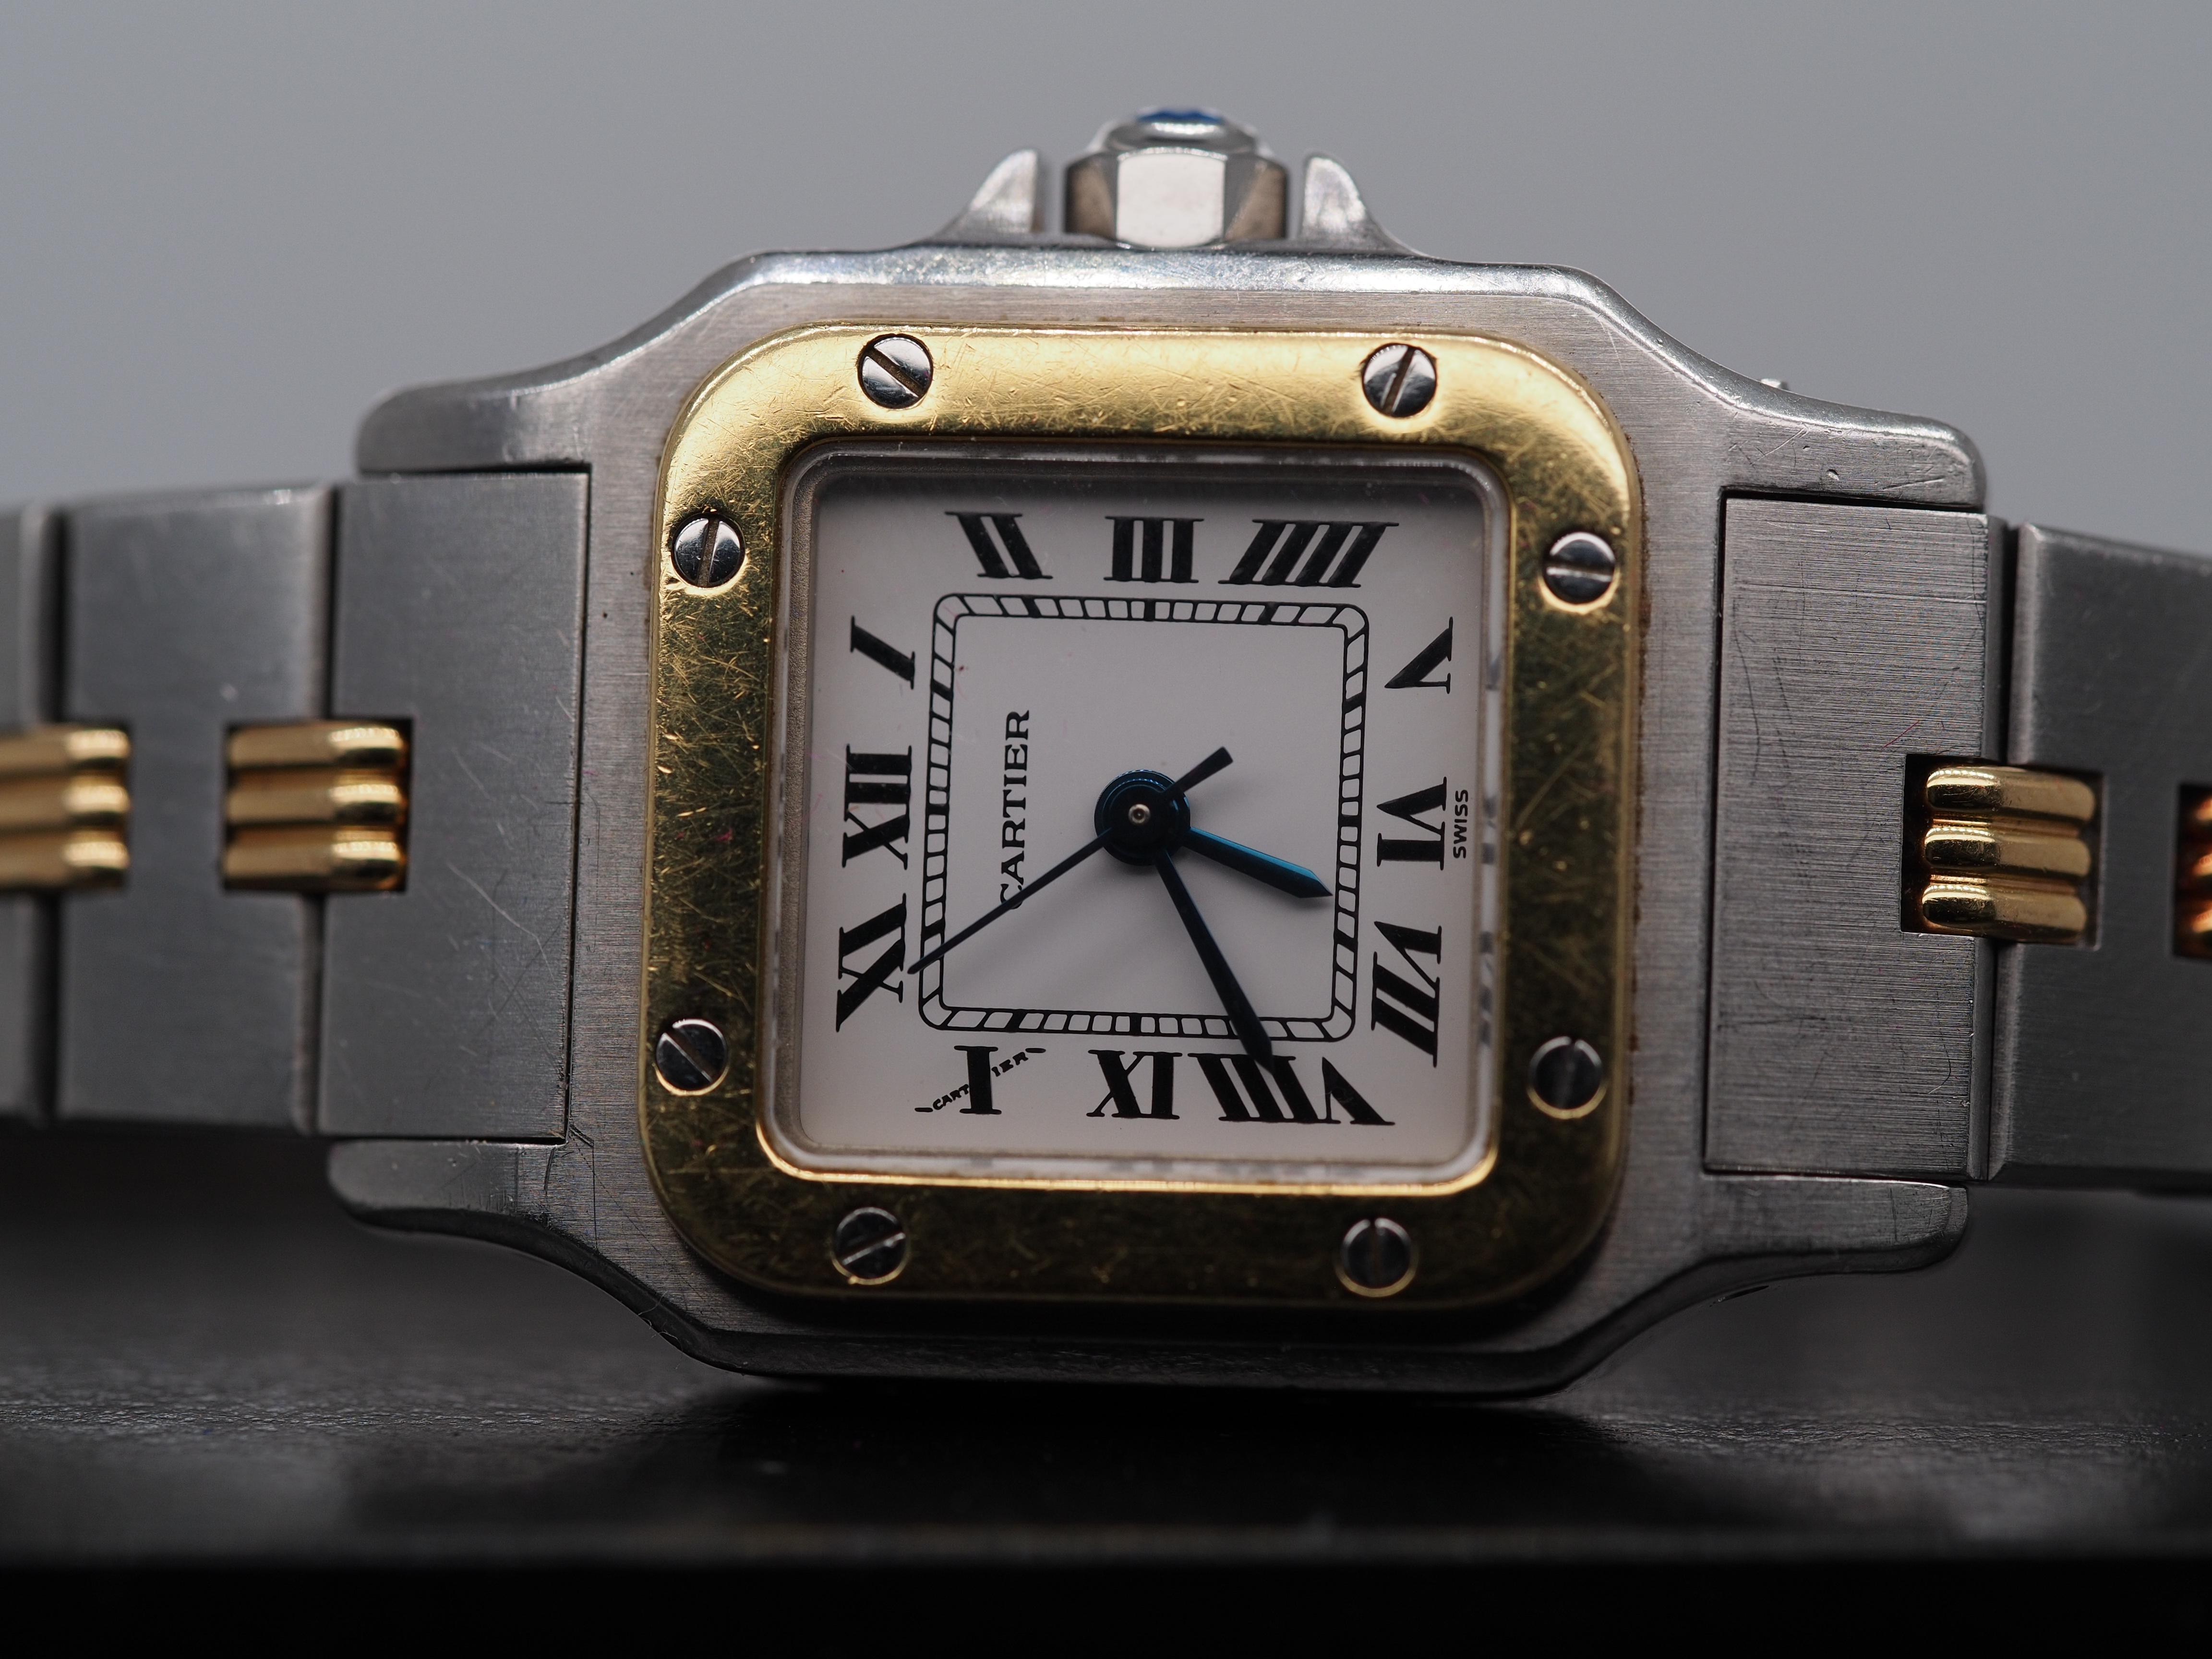 Gehäusegröße: 25mm
Metall Typ: 18K Gelbgold und Edelstahl  [Gepunzt und geprüft]
Gewicht:  58,1 Gramm

Uhrwerk: Automatik

Hersteller der Uhr: Cartier
Uhrwerk-Hersteller: Cartier

Bedingung:  Ausgezeichnet, Läuft.